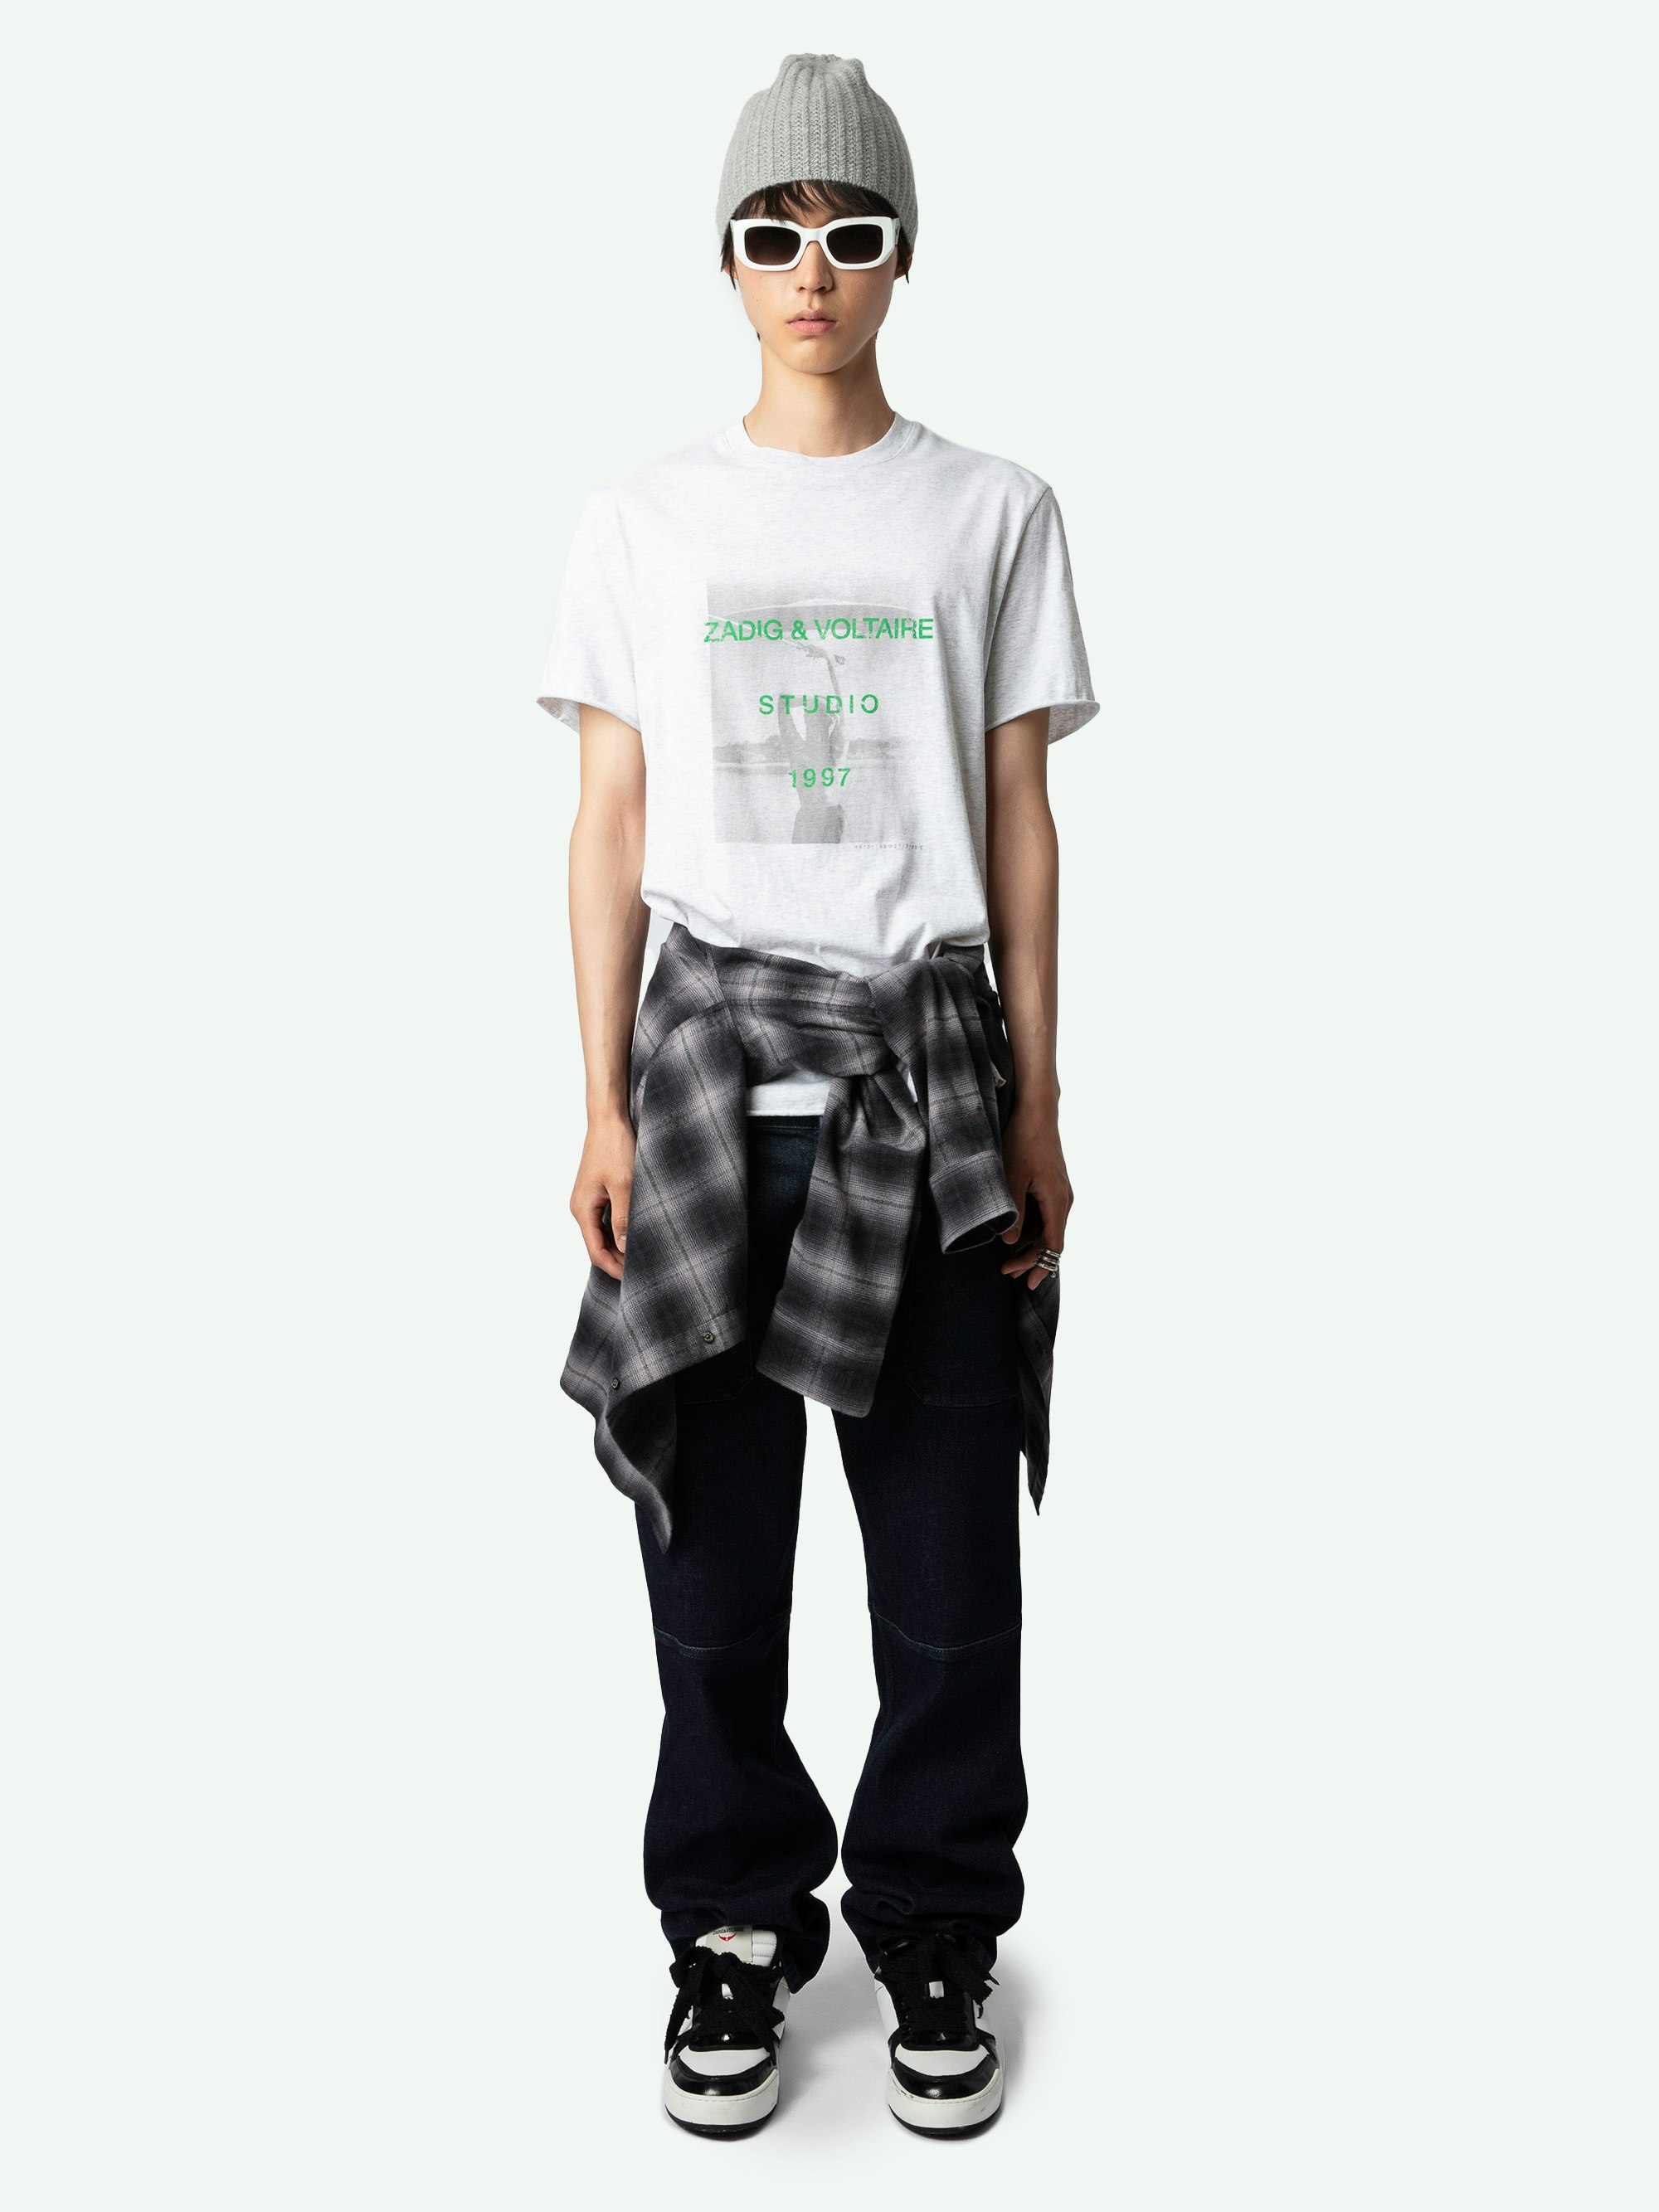 T-shirt Ted Photoprint - T-shirt en coton biologique gris chiné clair à manches courtes et imprimé photoprint Studio Woman à l'avant.